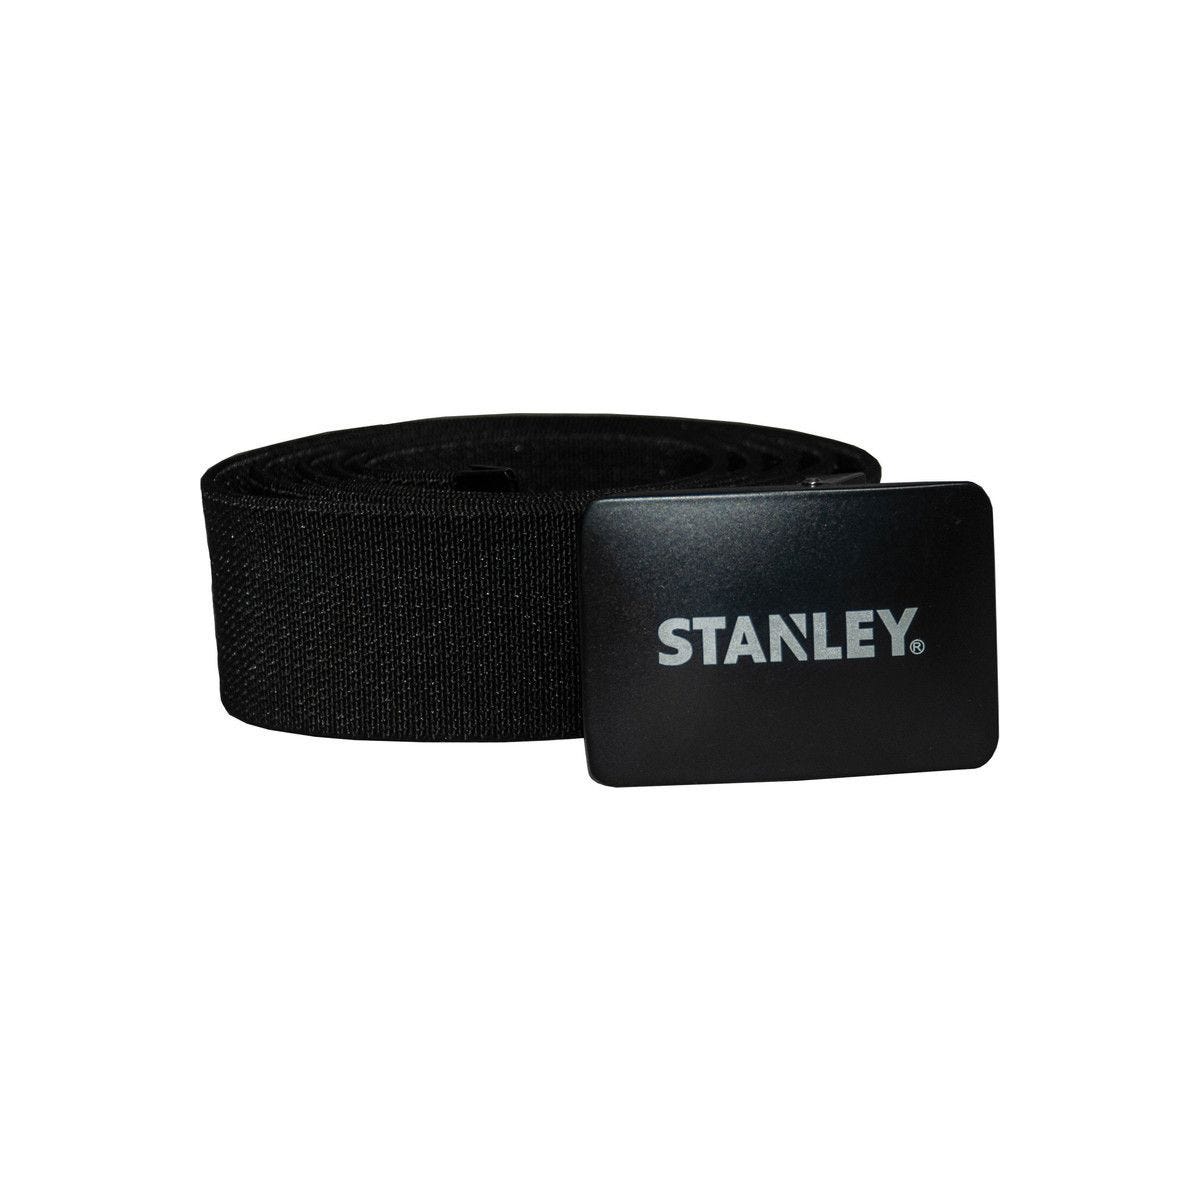 Ceinture Stanley ajustable - Stanley 0